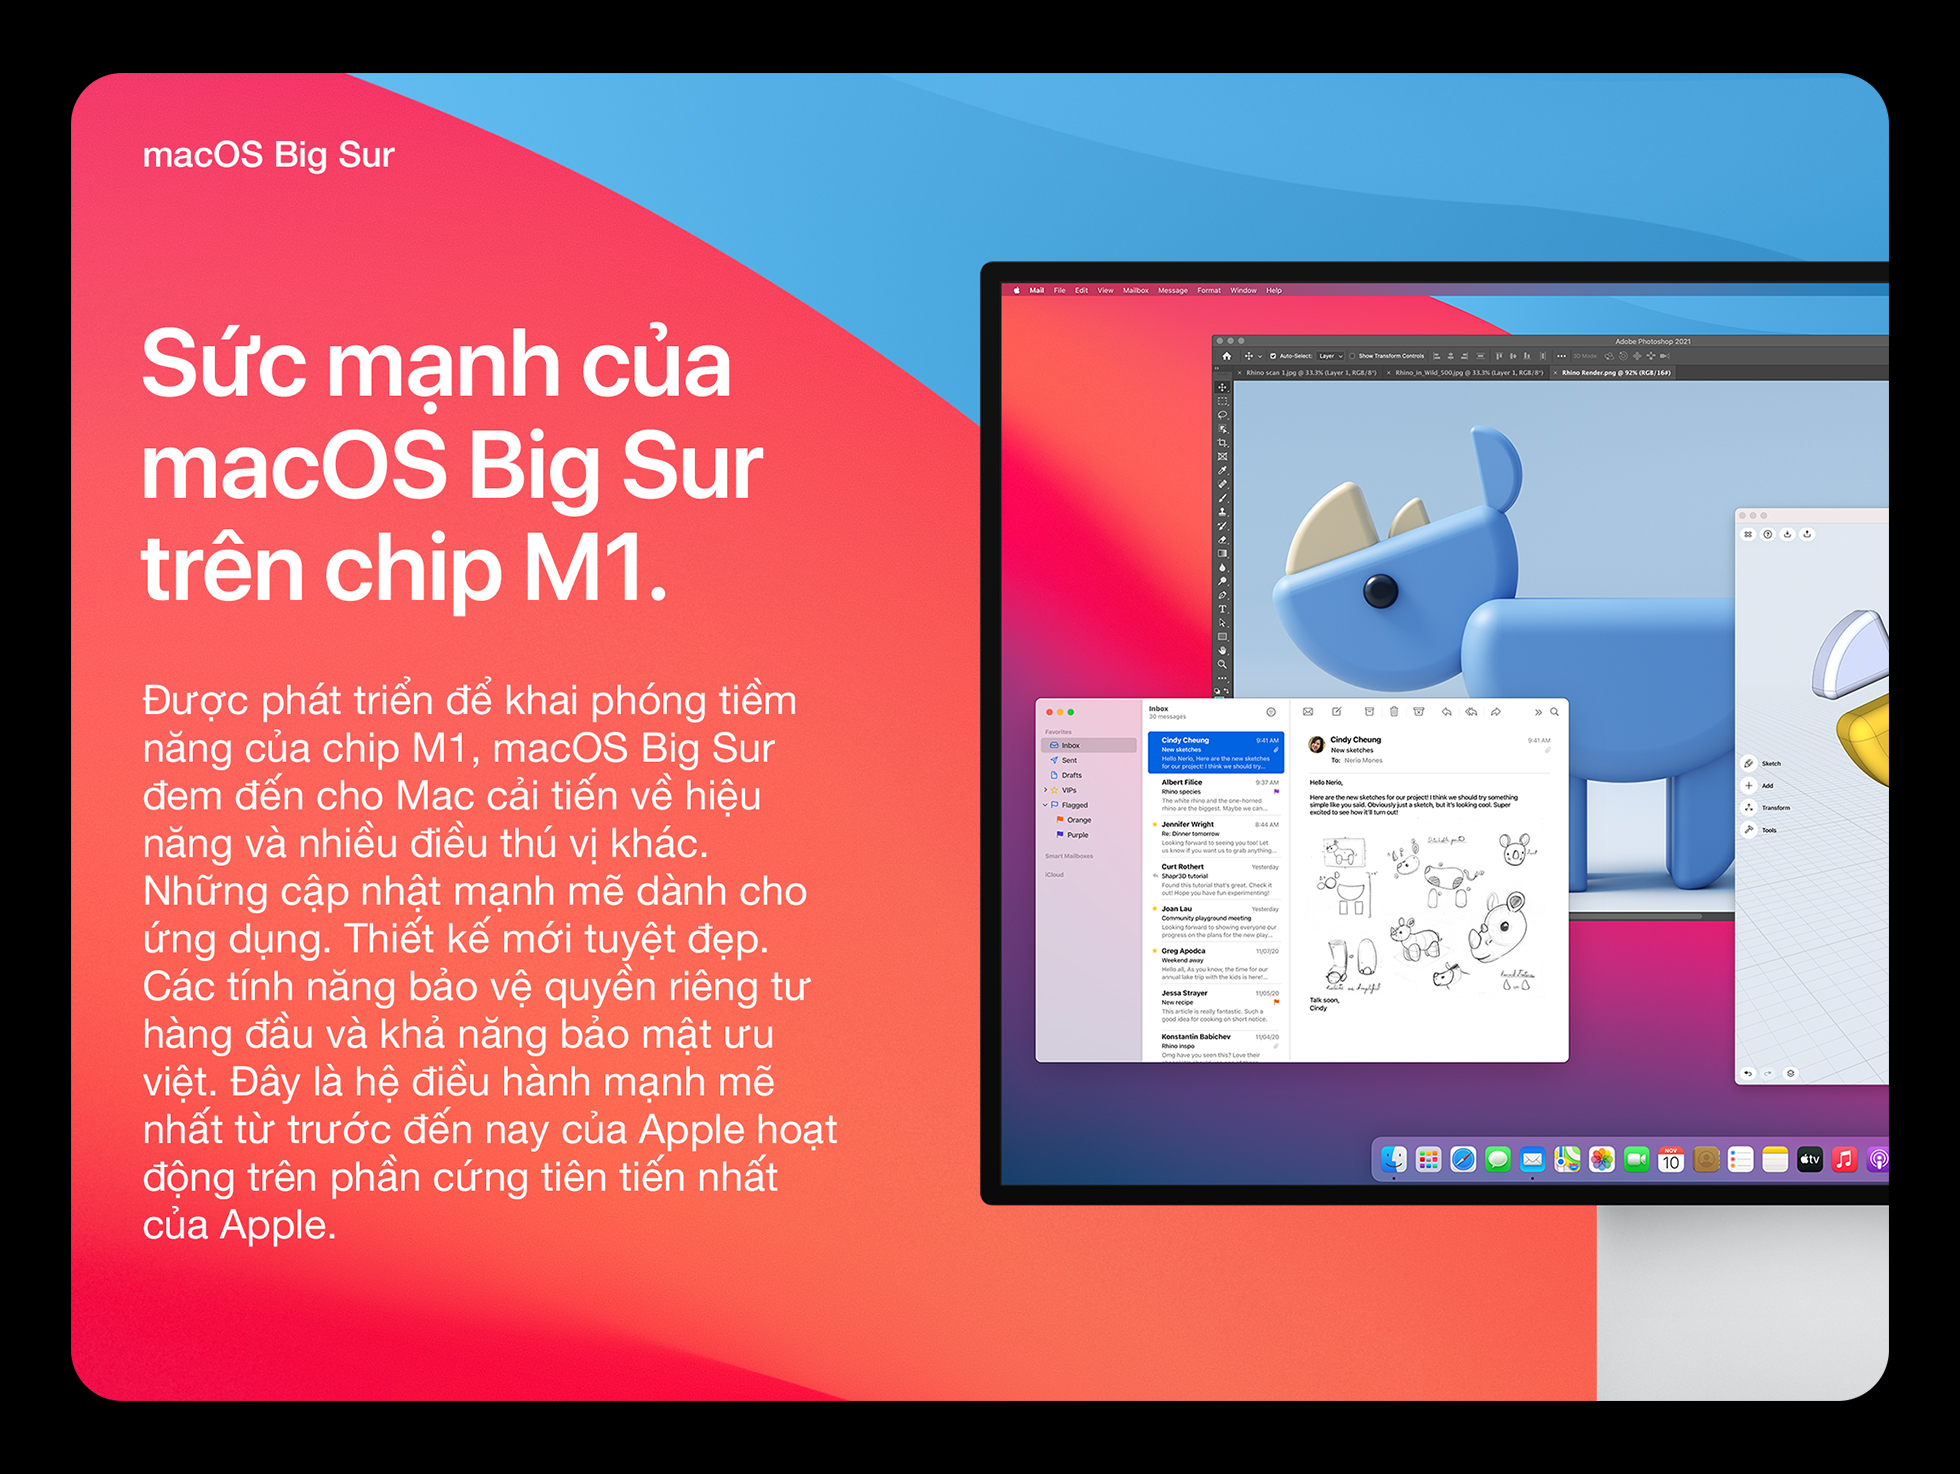 Mac mini M1 2020 - macOS Big Sur